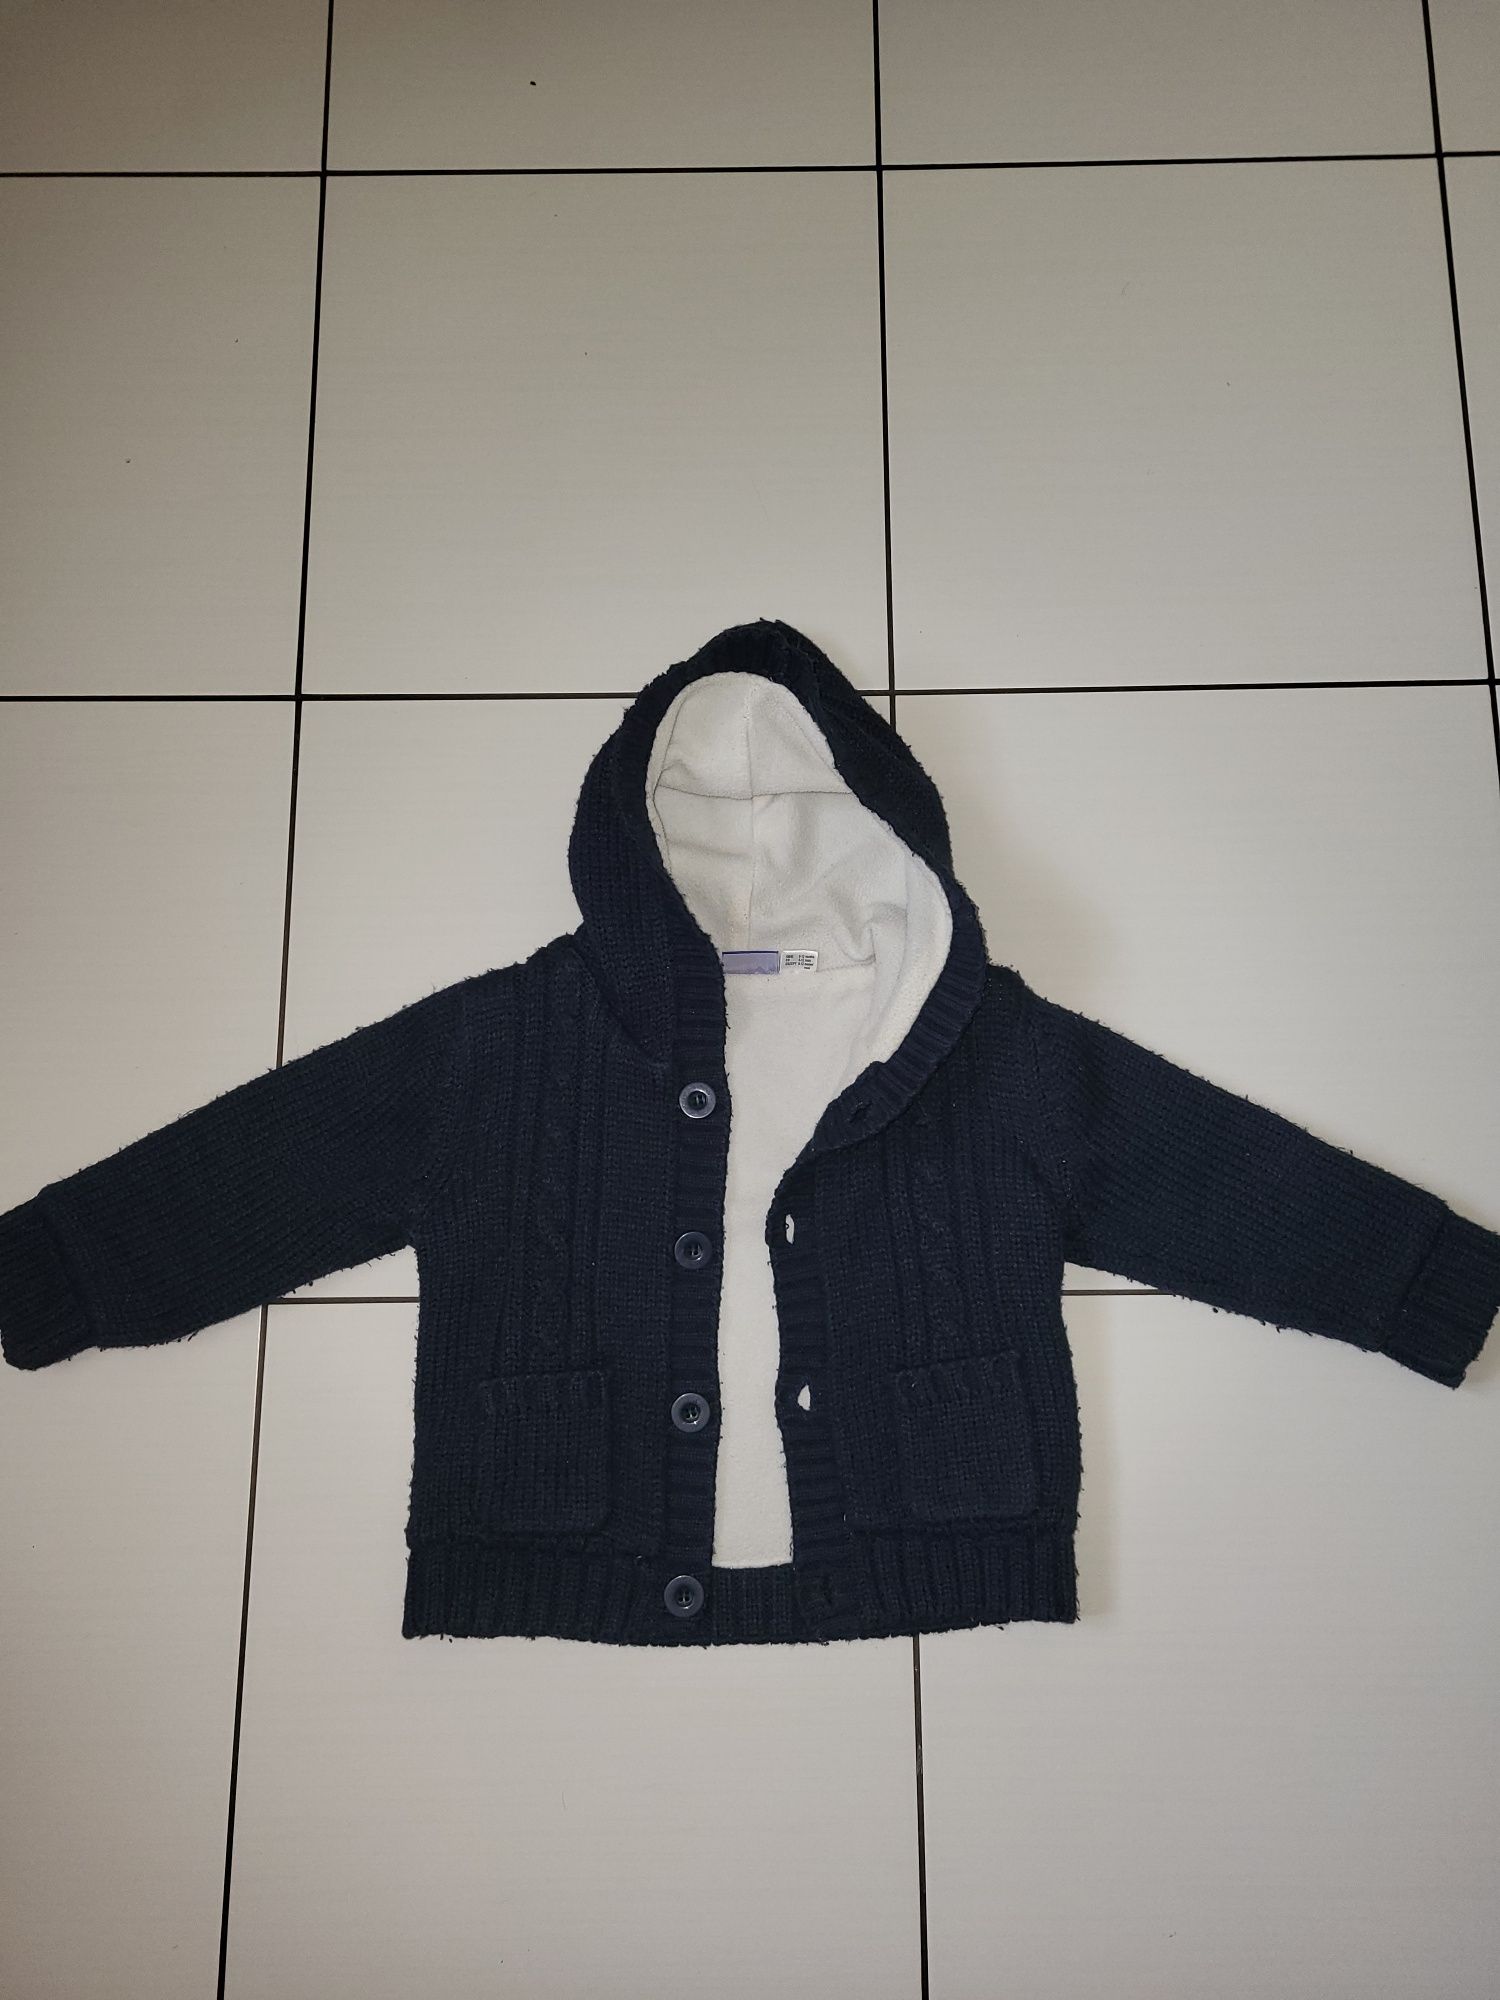 Granatowy sweter, bluza z polarem rozmiar 74/80 cm